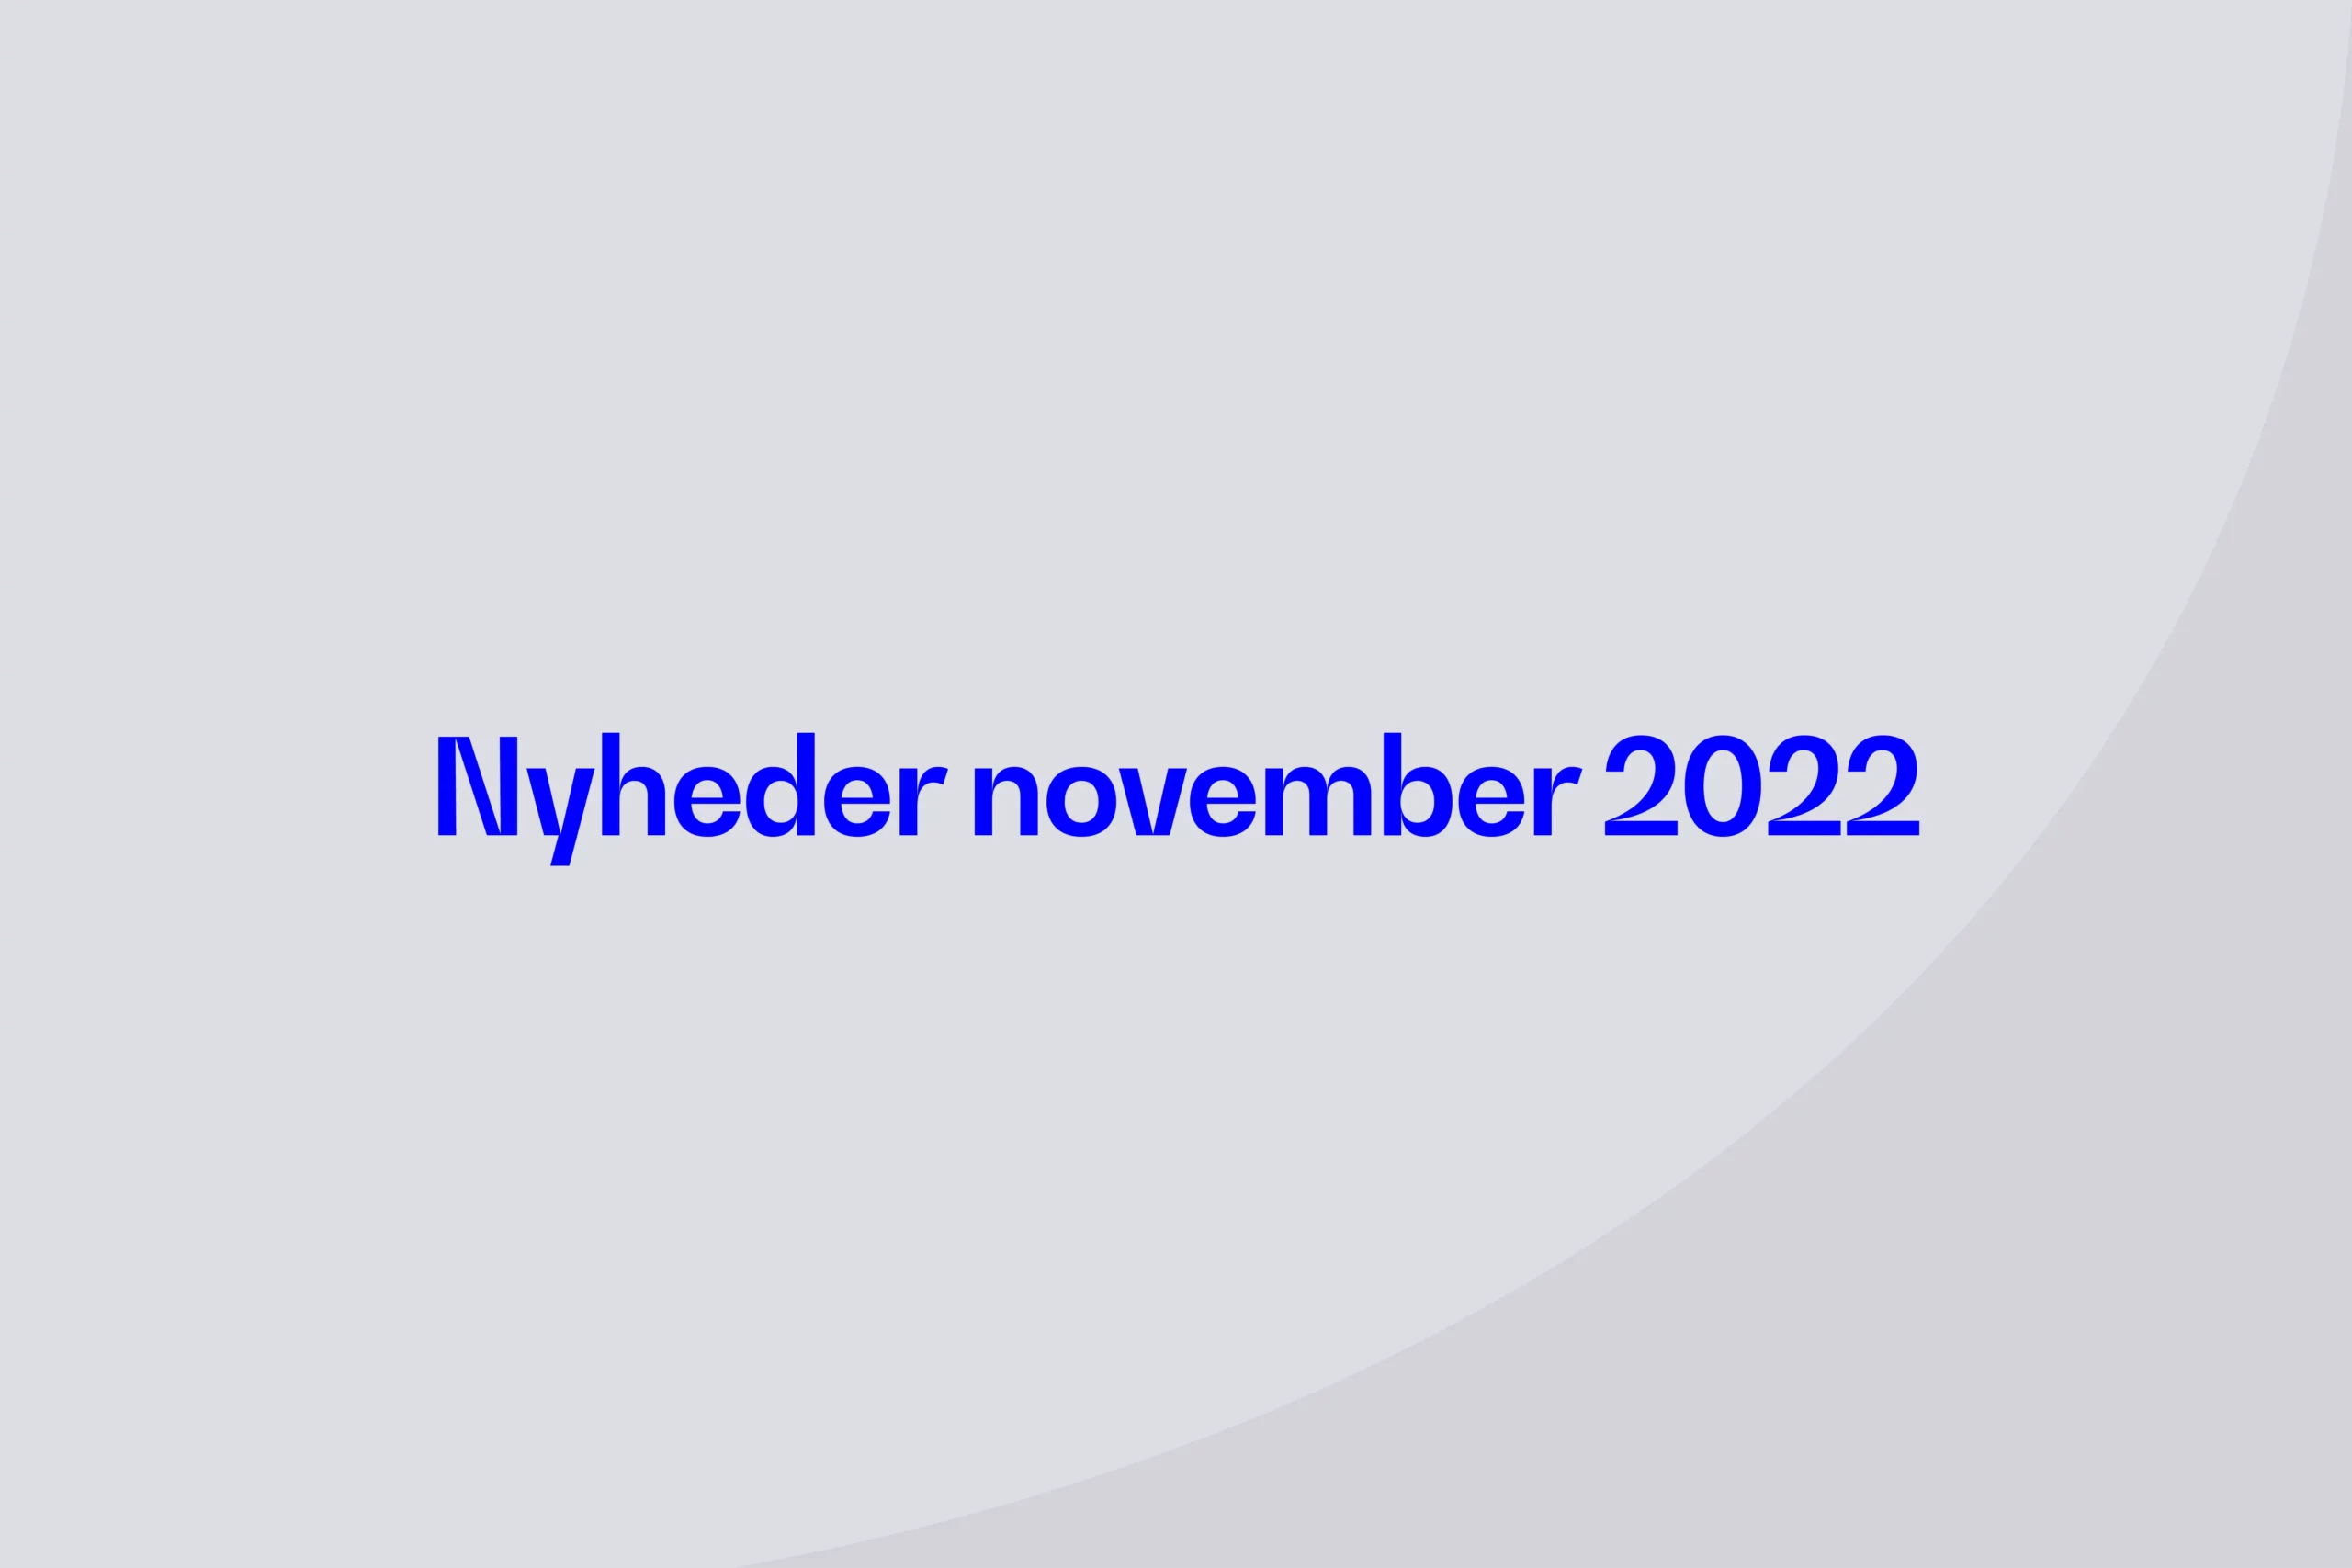 Nyheder november 2022